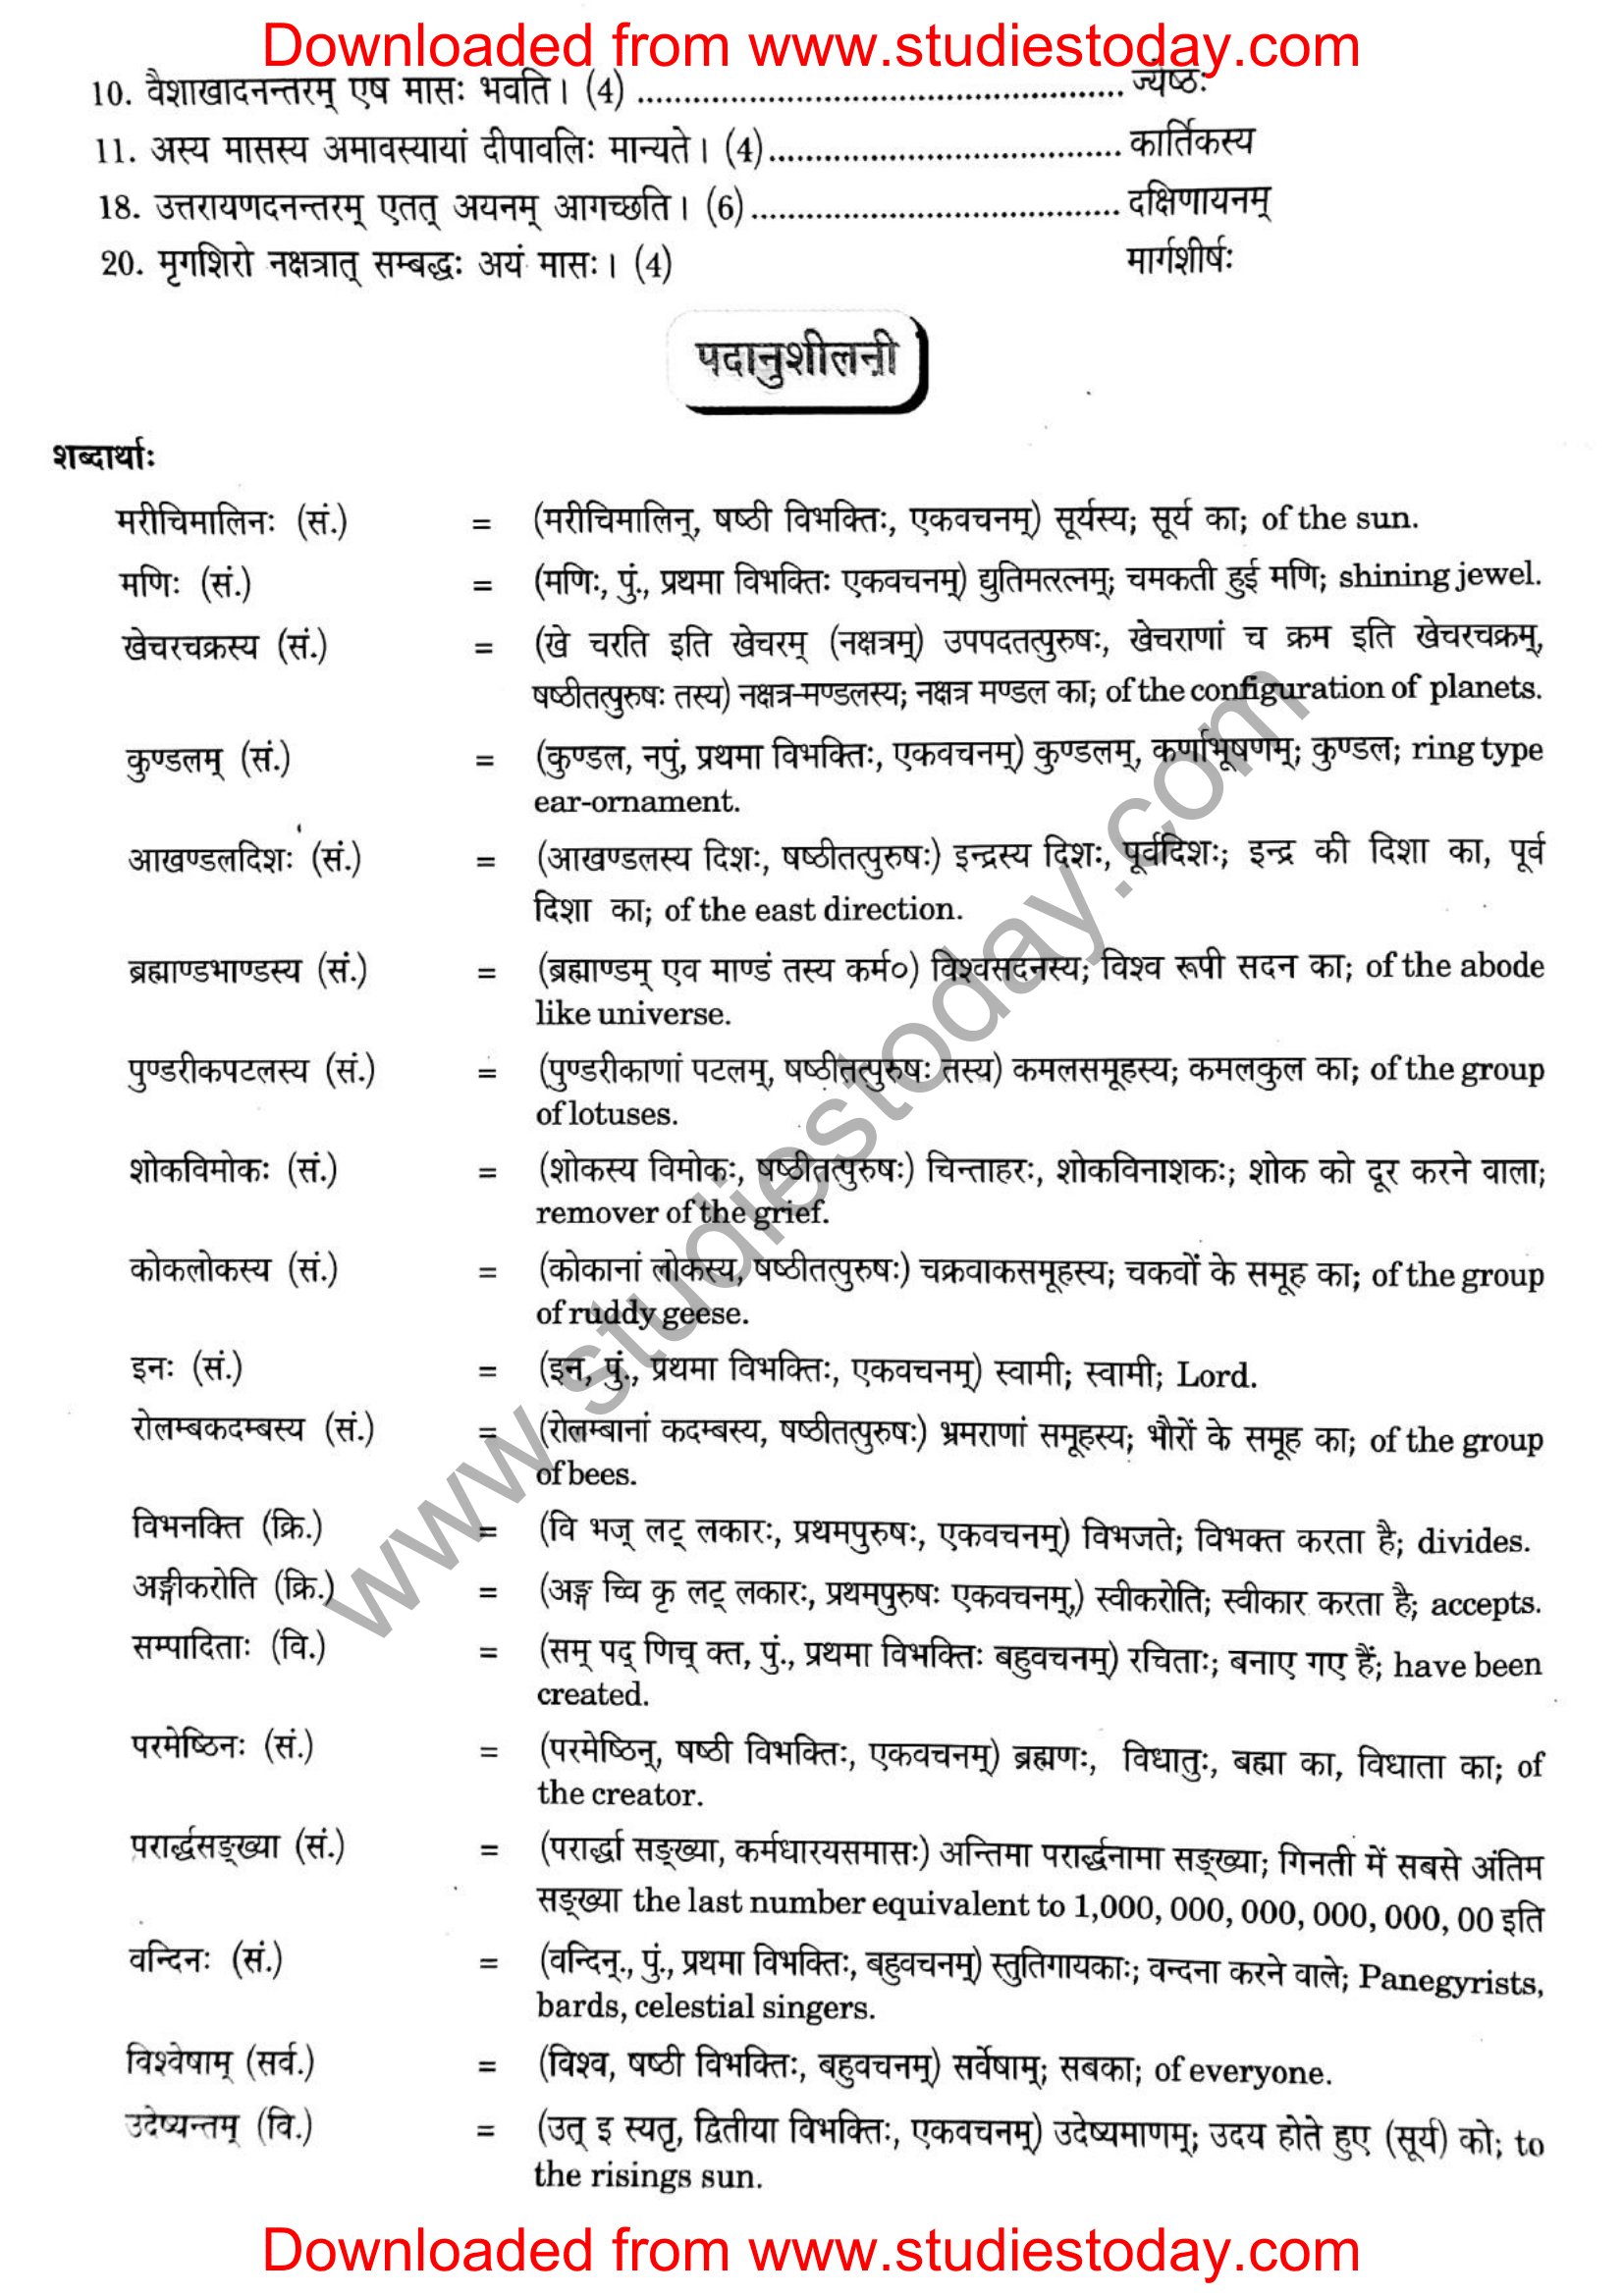 ncert-solutions-class-12-sanskrit-ritikia-chapter-2-11